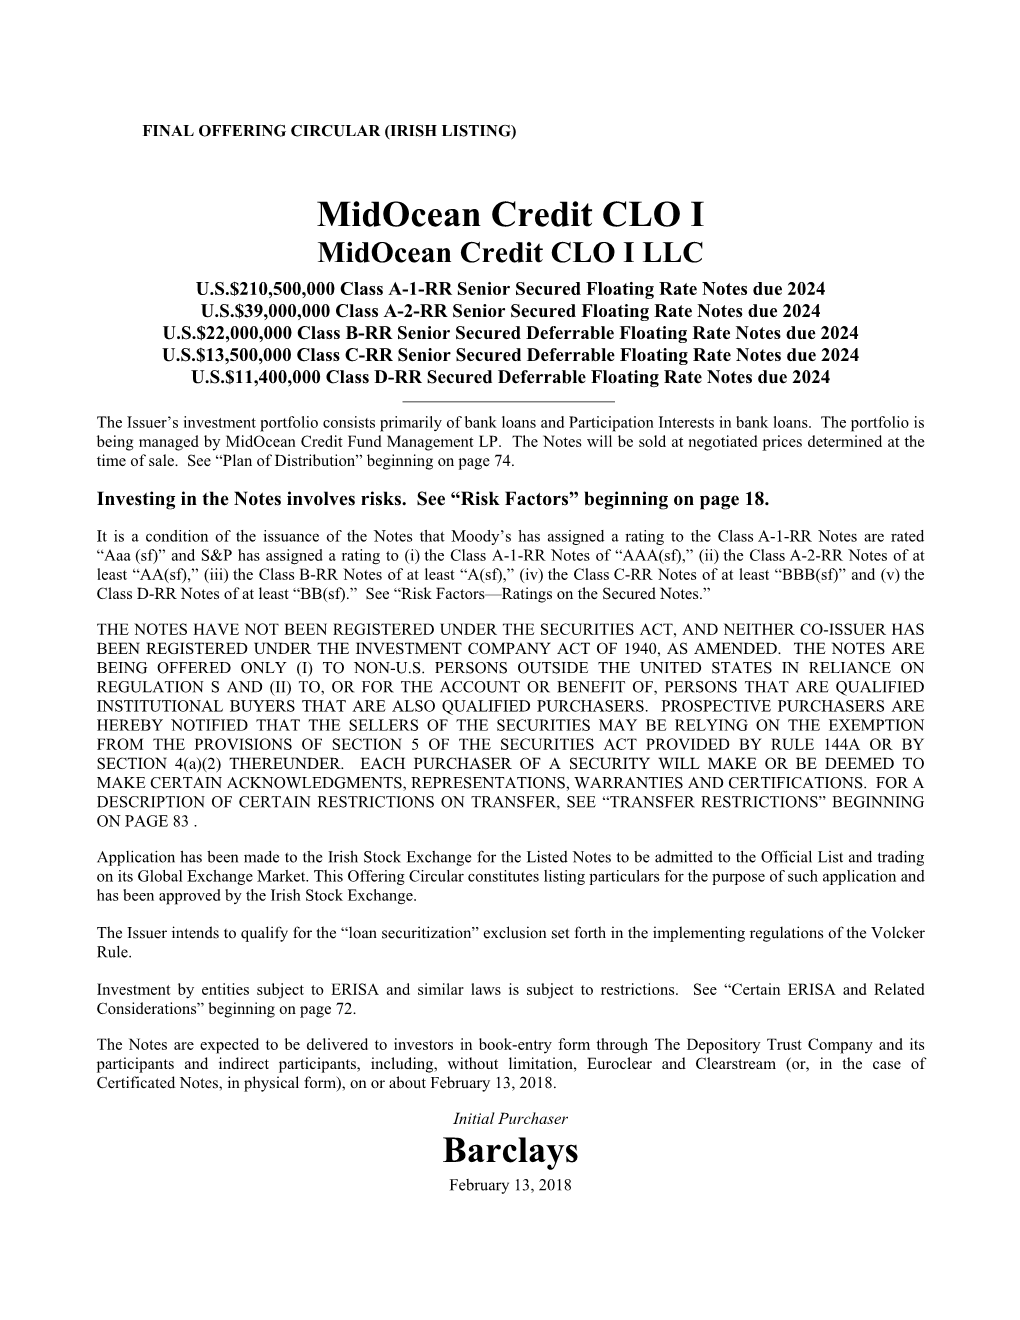 Midocean Credit CLO I Barclays